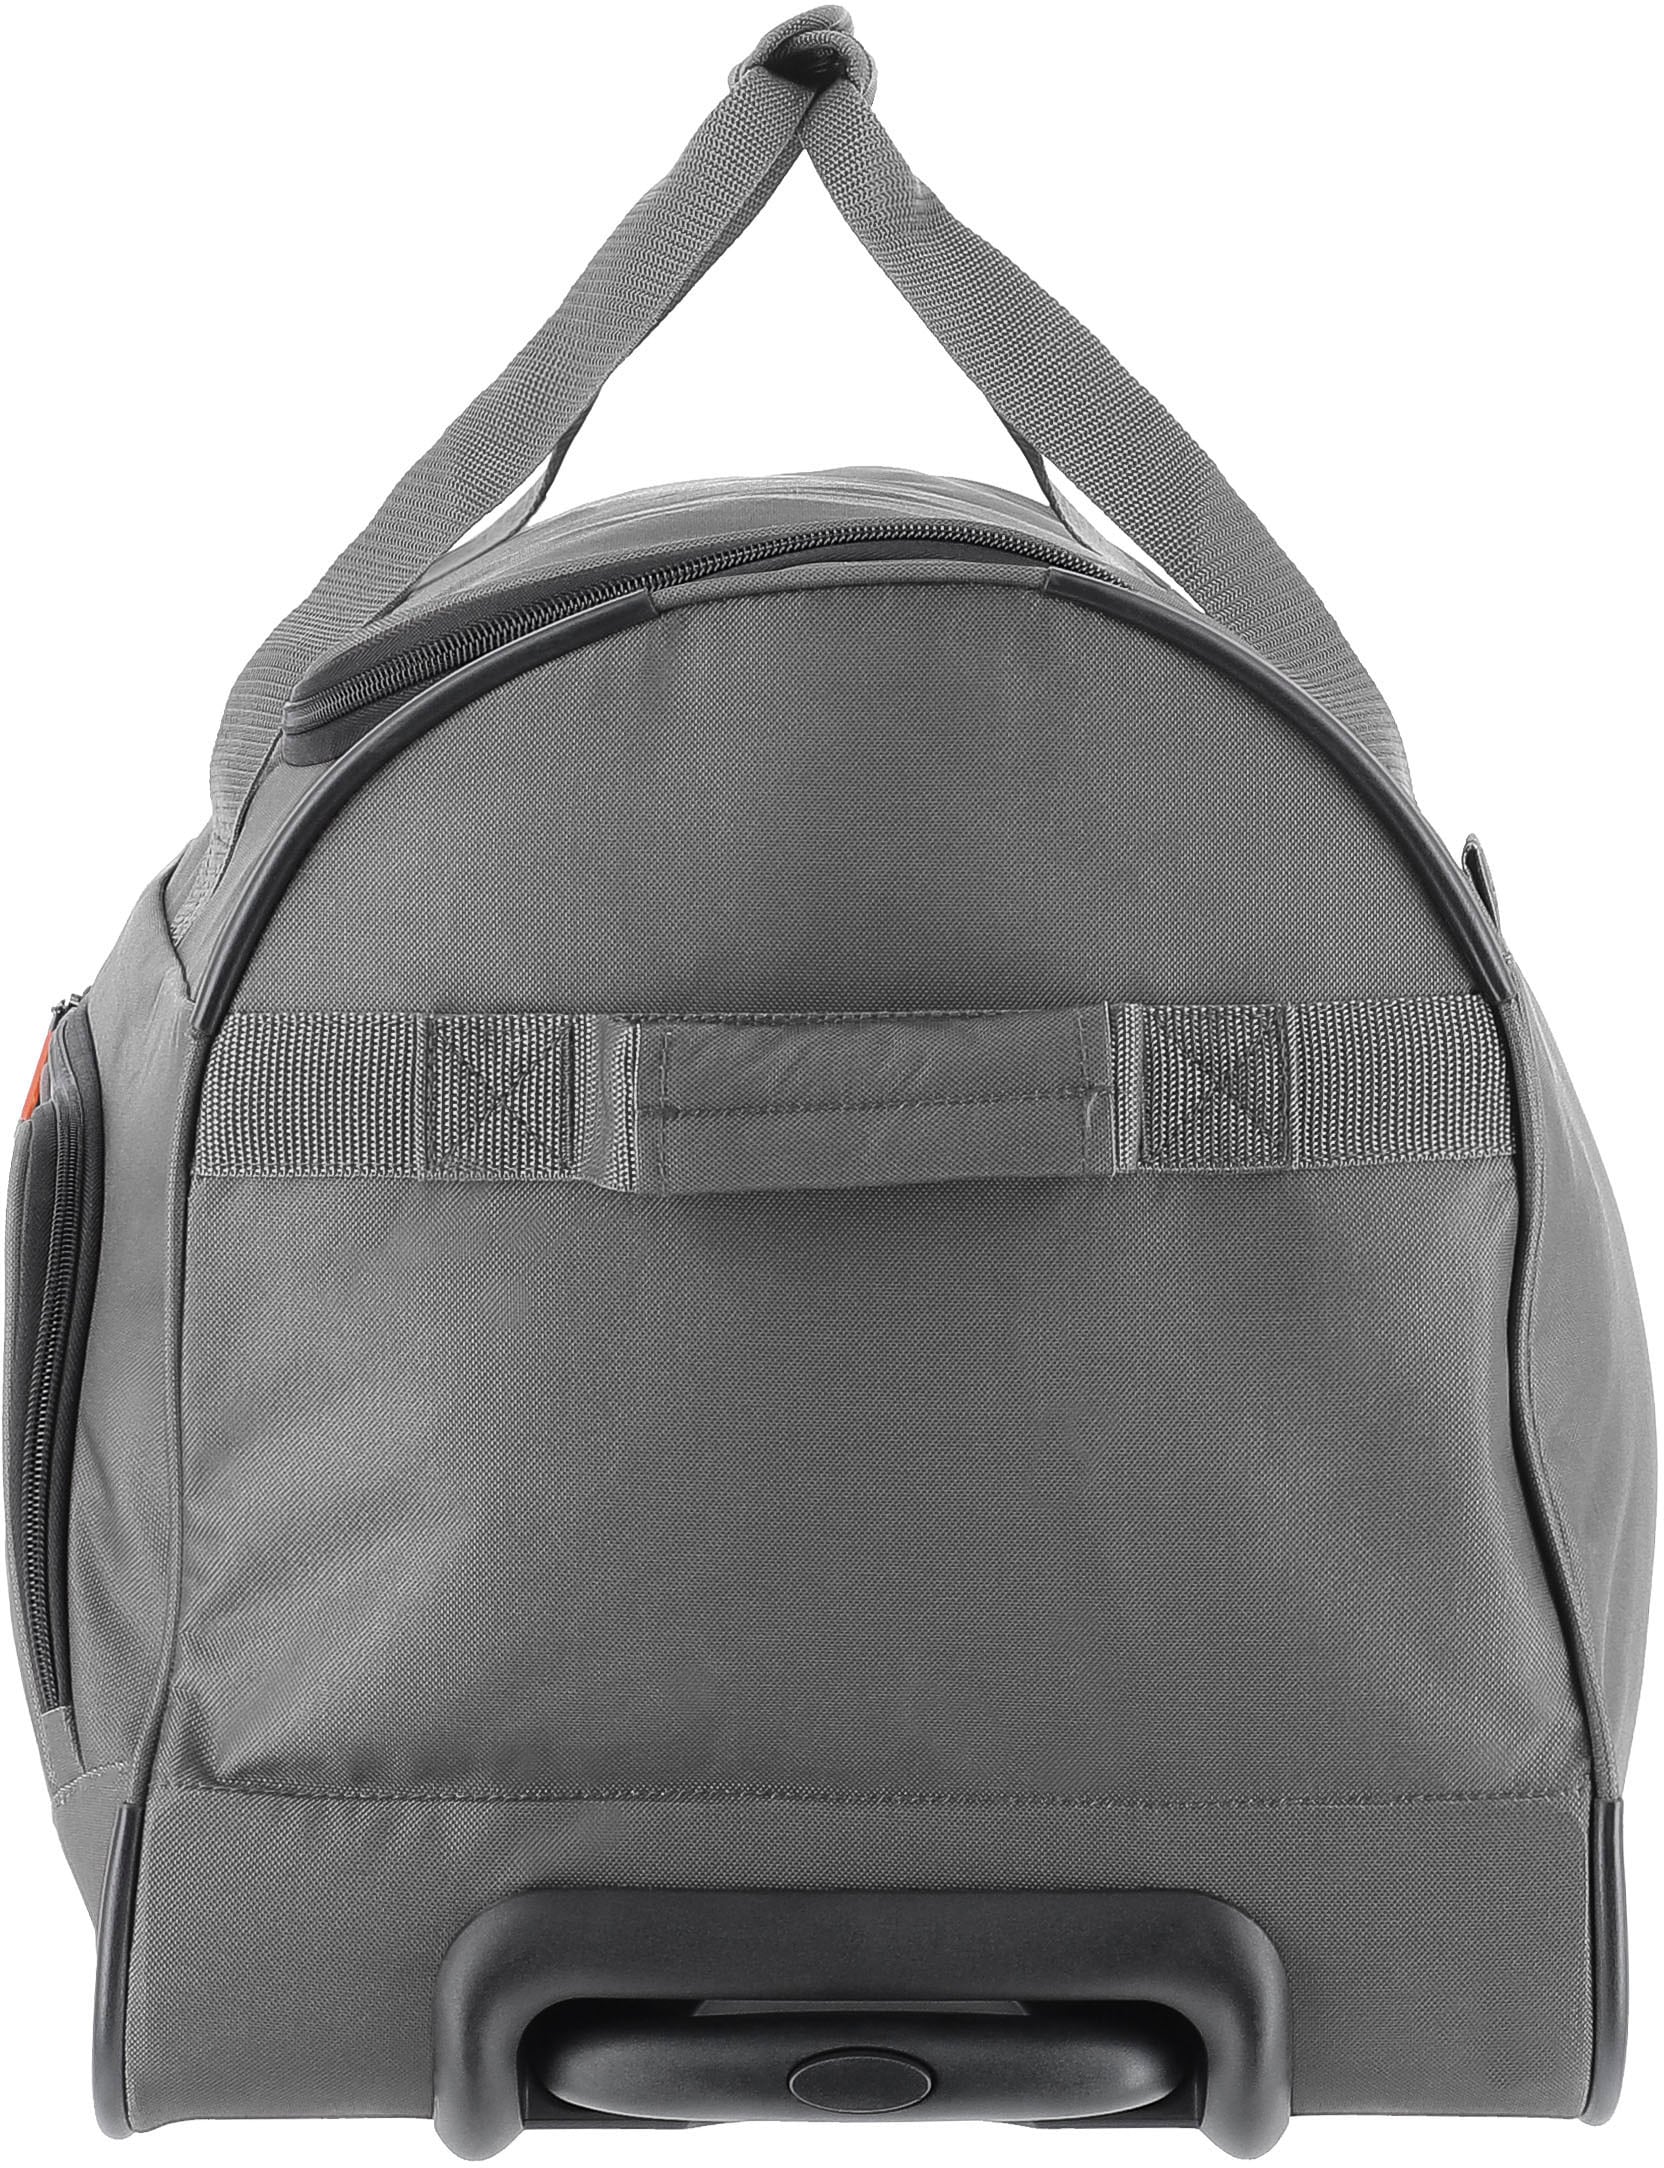 travelite Reisetasche »Basics Fresh, 71 cm«, Duffle Bag Reisegepäck Sporttasche Reisebag mit Trolleyfunktion